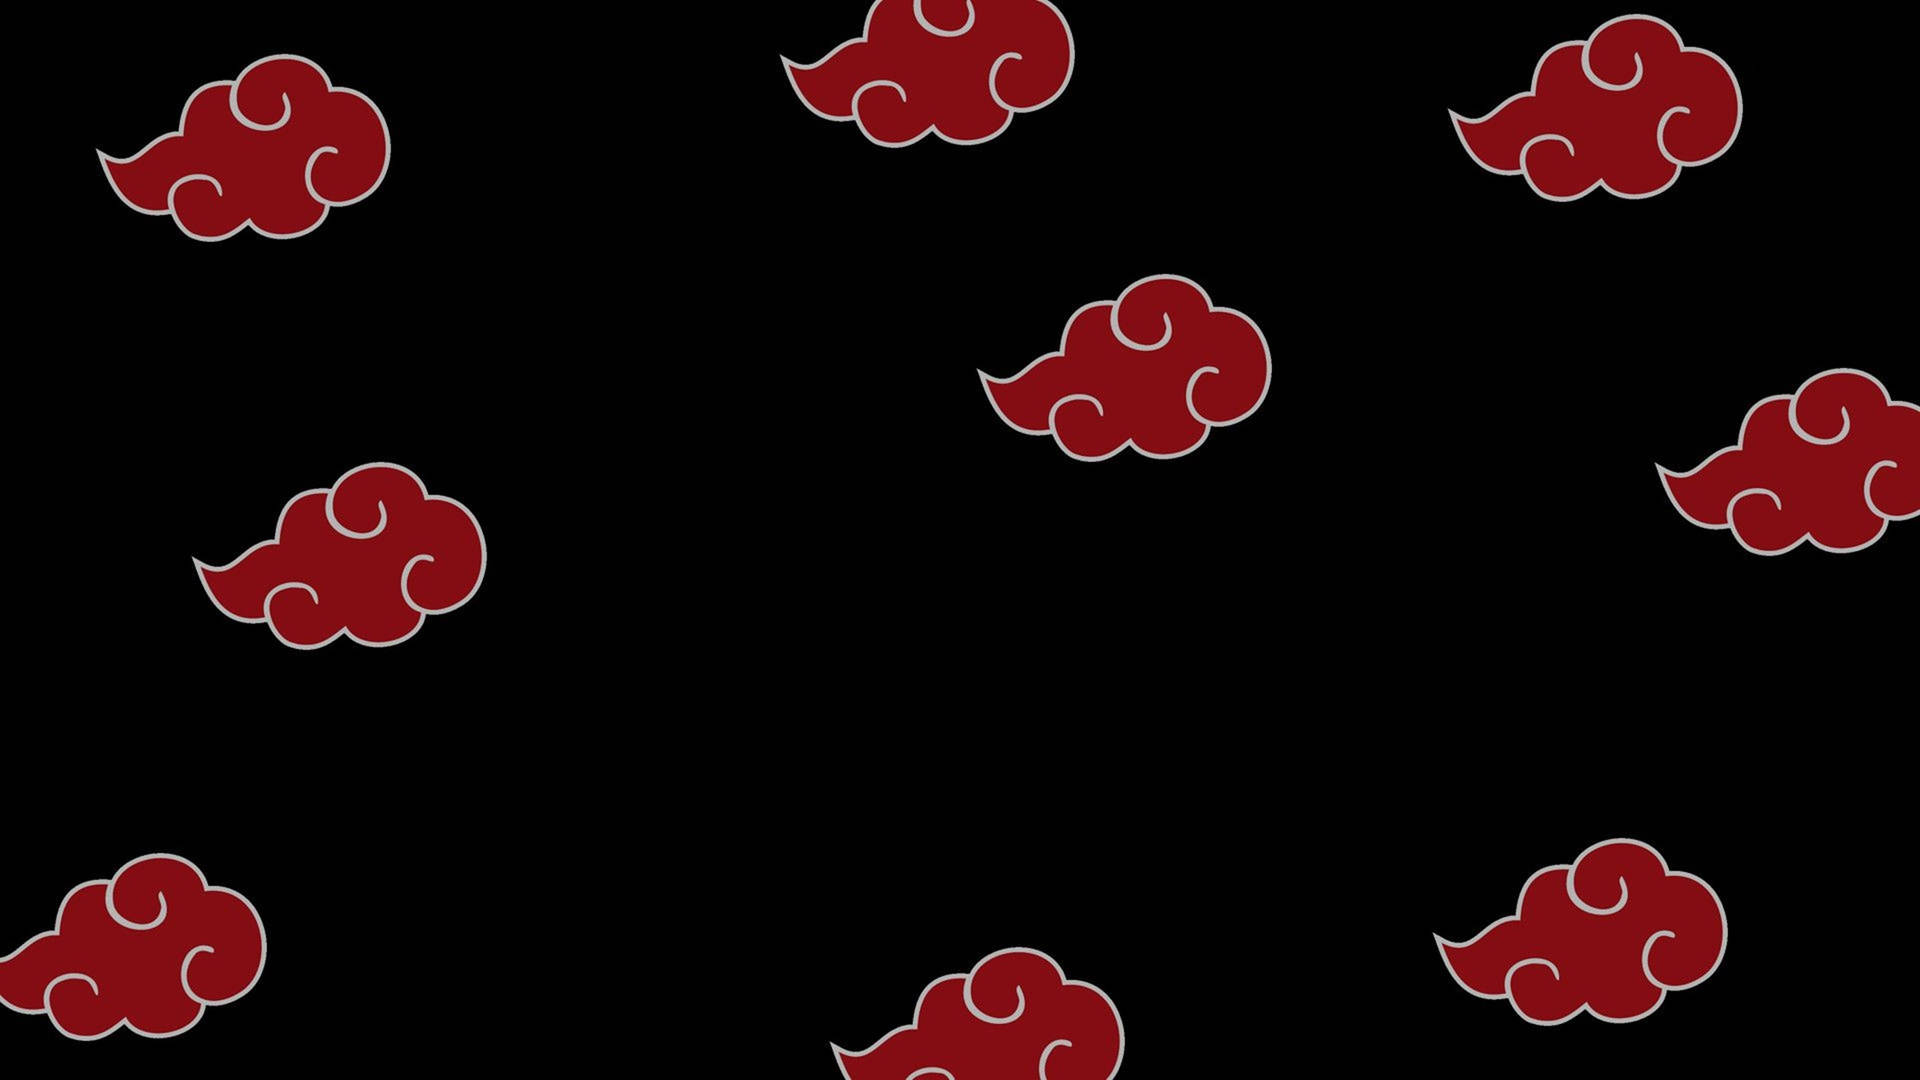 Akatsuki Logo Red Cloud Pattern